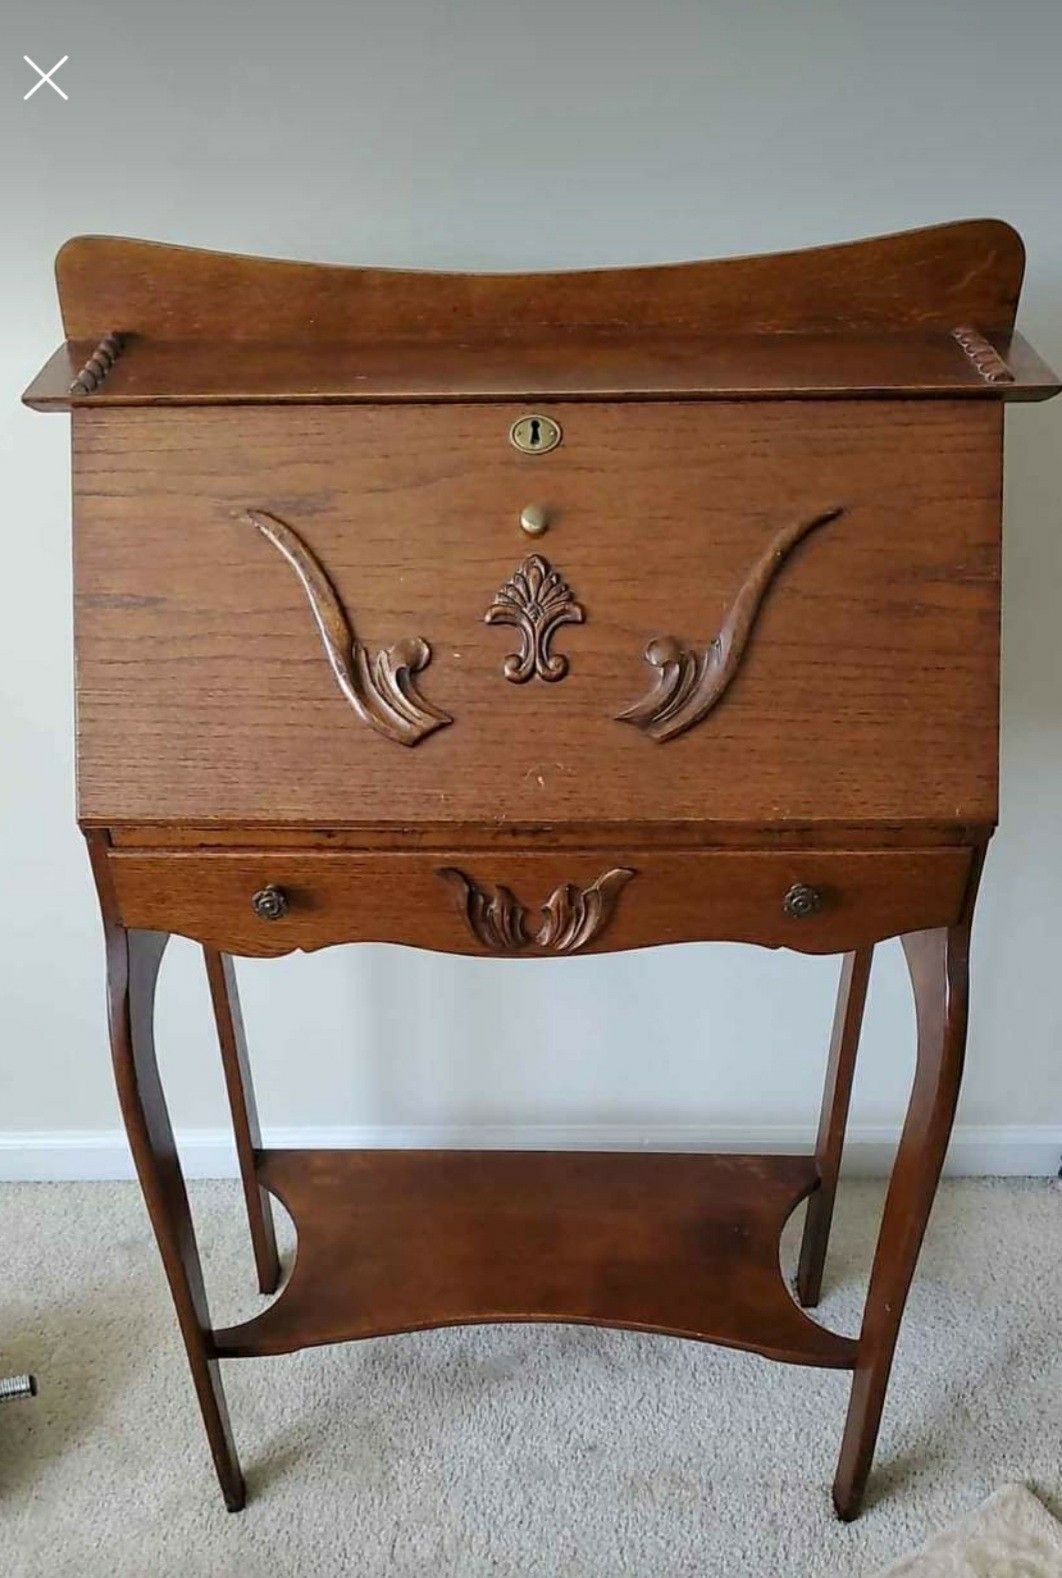 Antique Wooden Desk